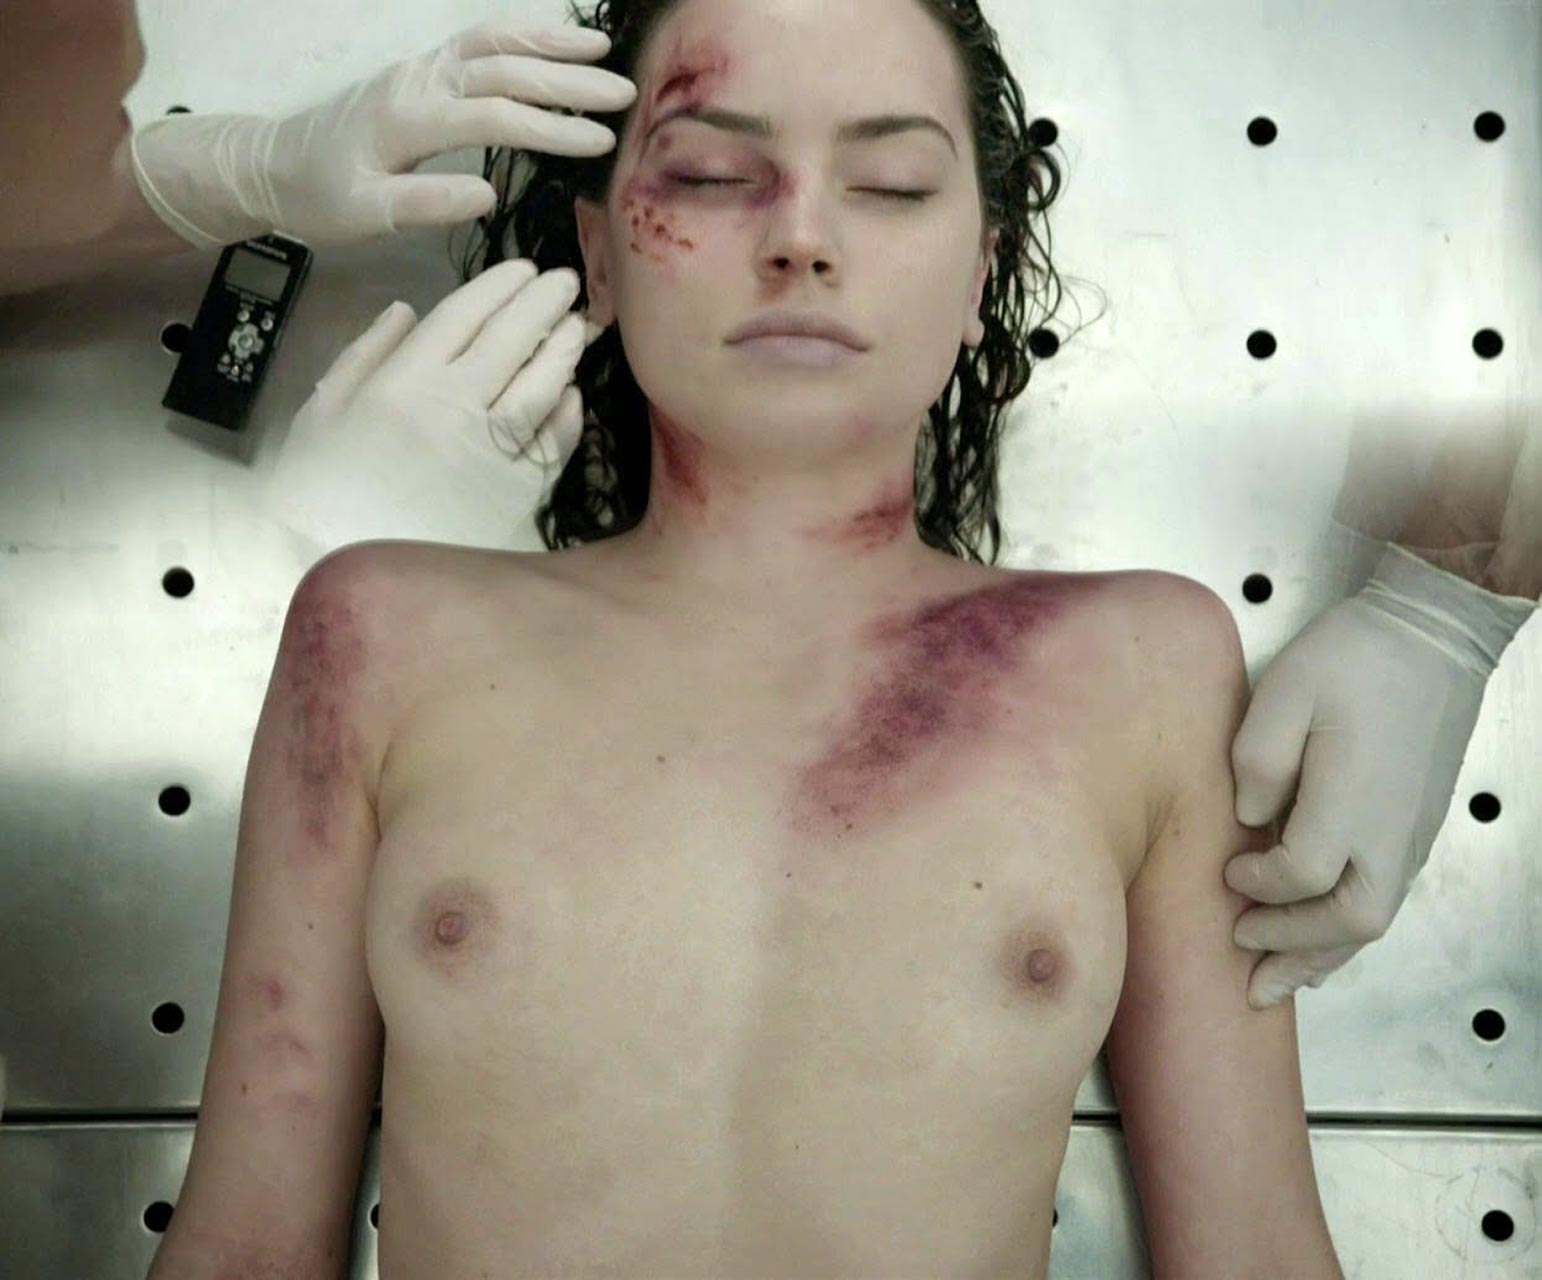 Daisy Ridley nude pics.